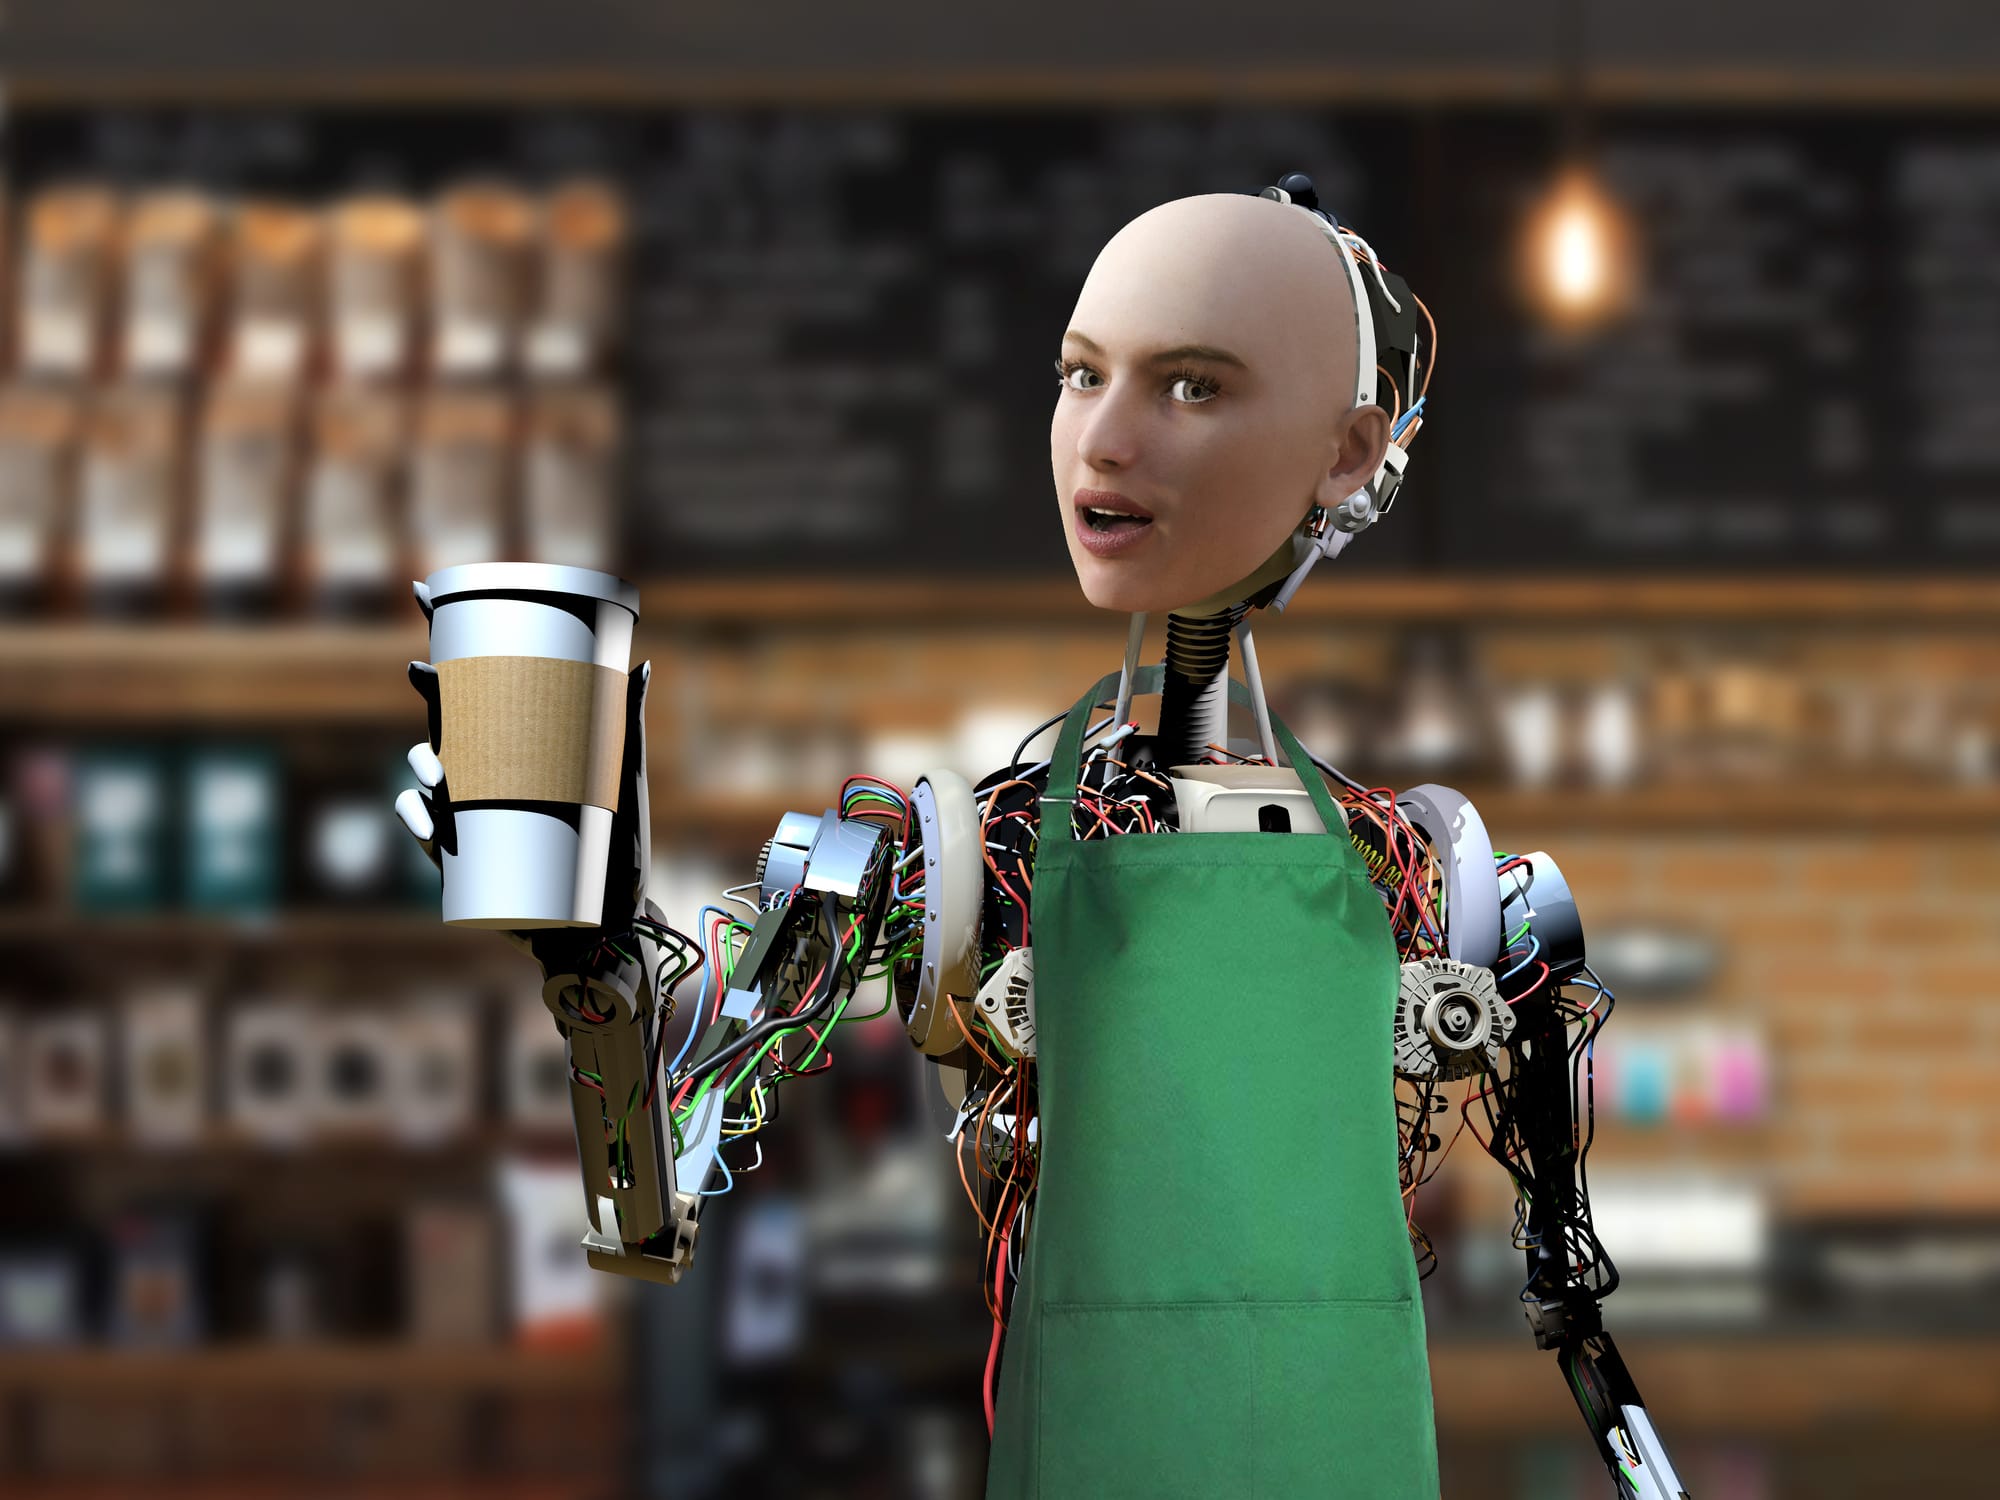 Τα εστιατόρια και καφέ στρέφονται στα ρομπότ λόγω έλλειψης προσωπικού